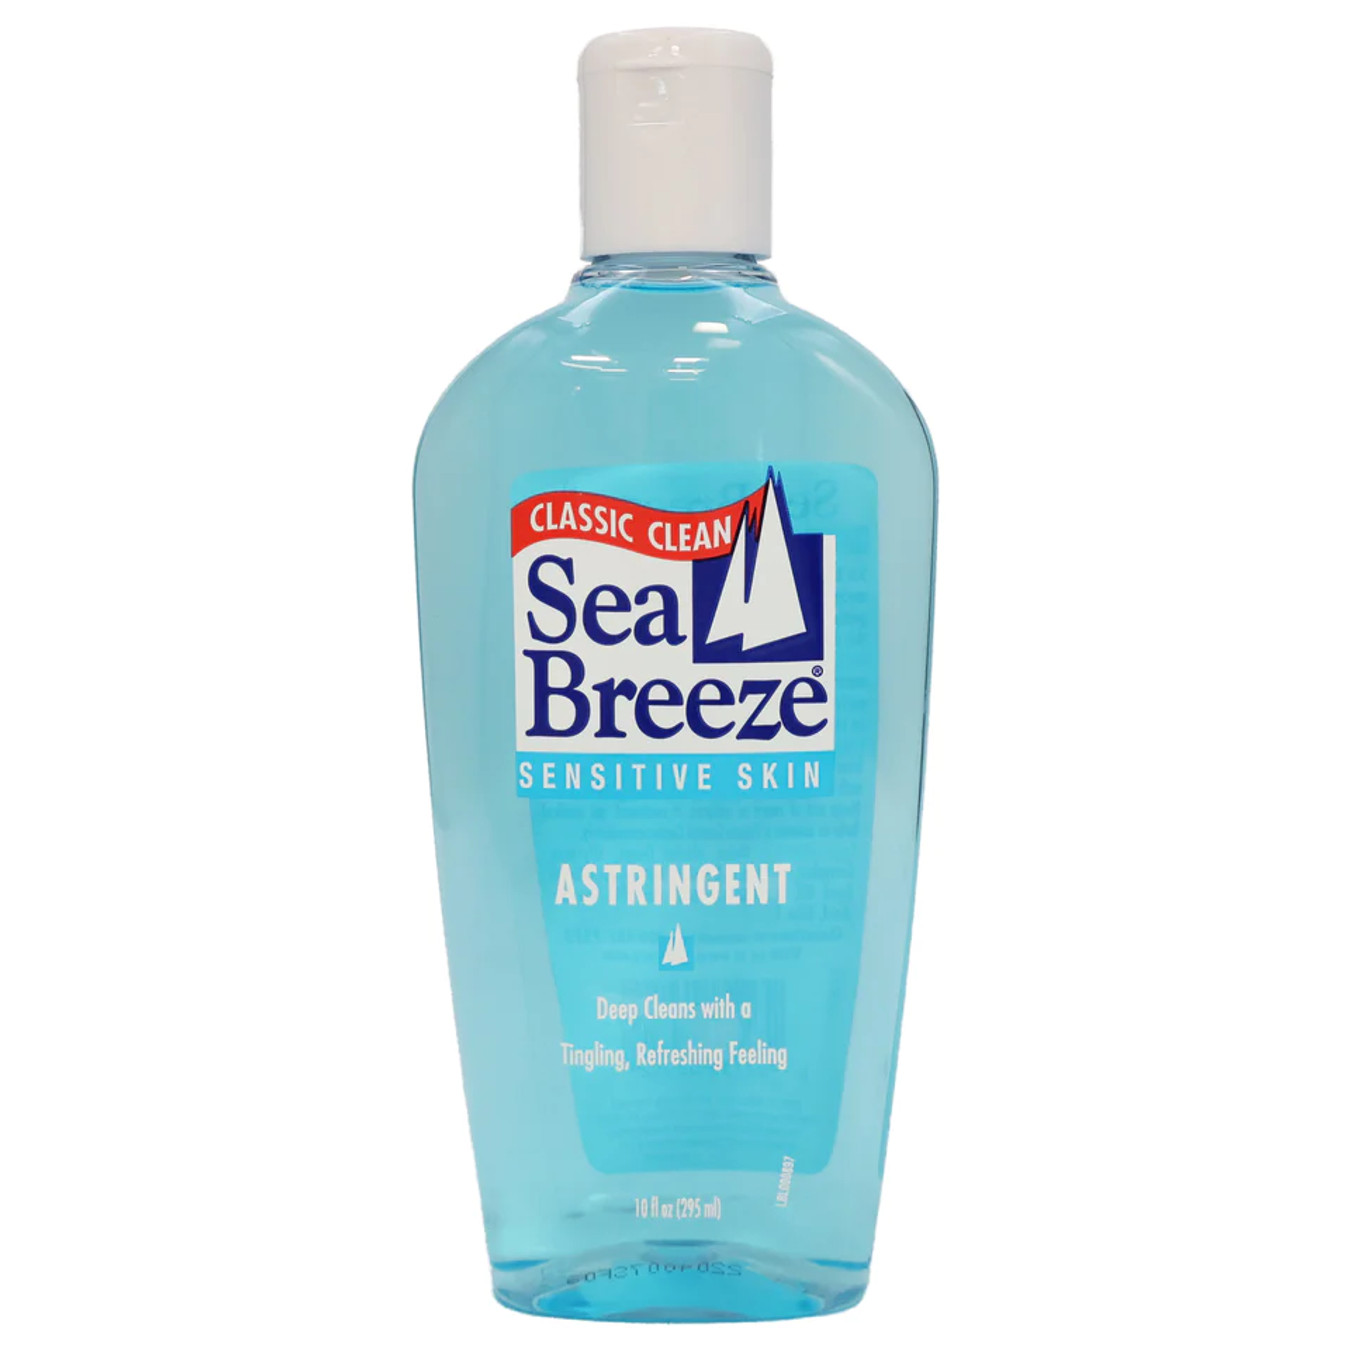 Sea Breeze Astringent (Sensitive Skin Formula)